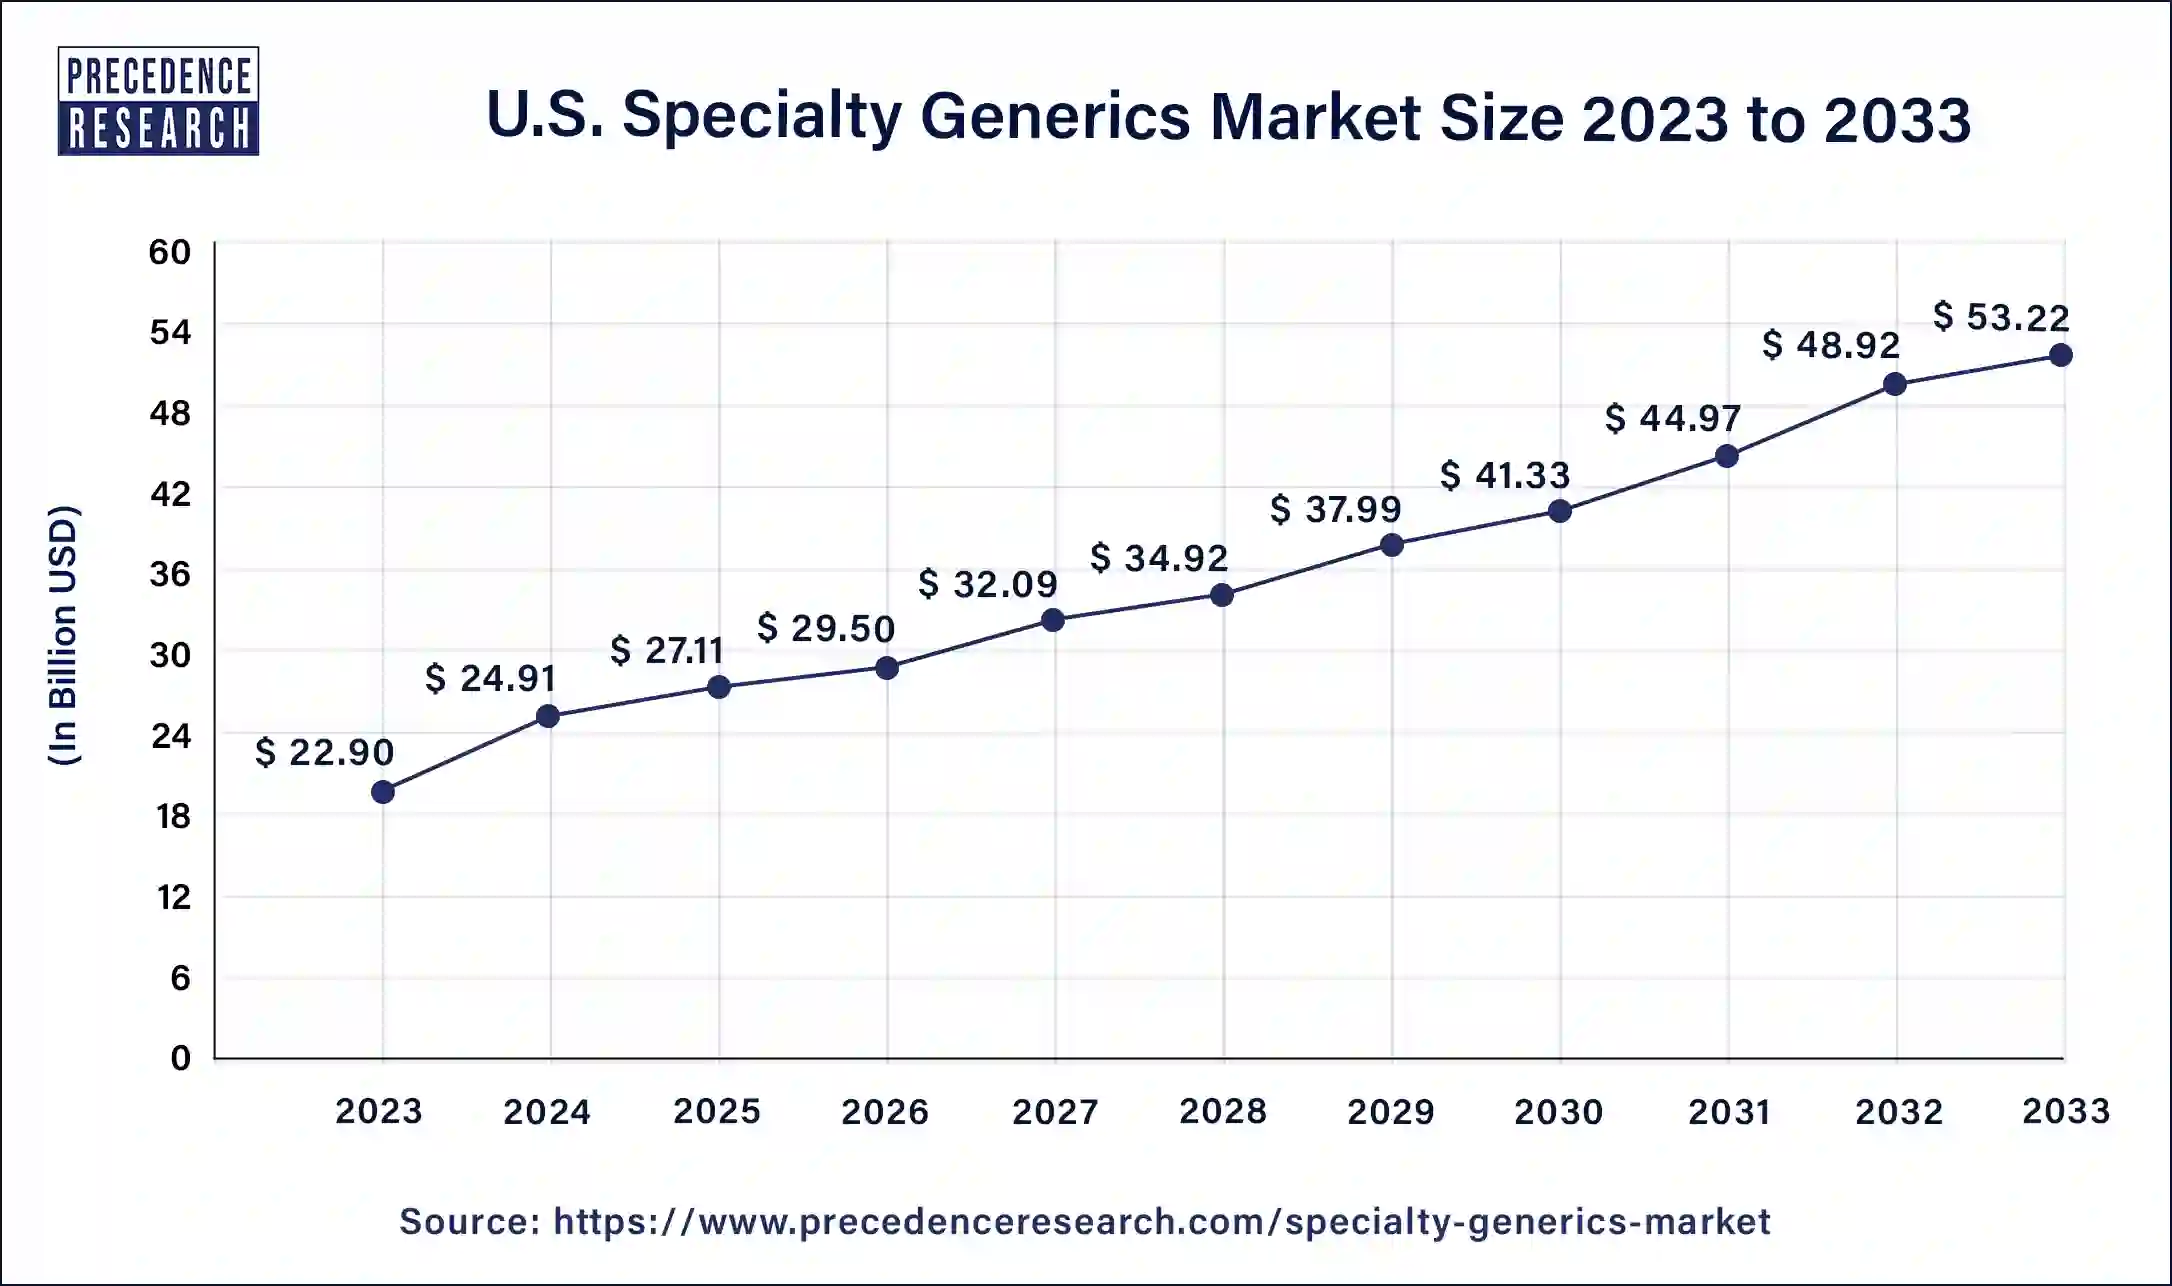 U.S. Specialty Generics Market Size 2024 to 2033